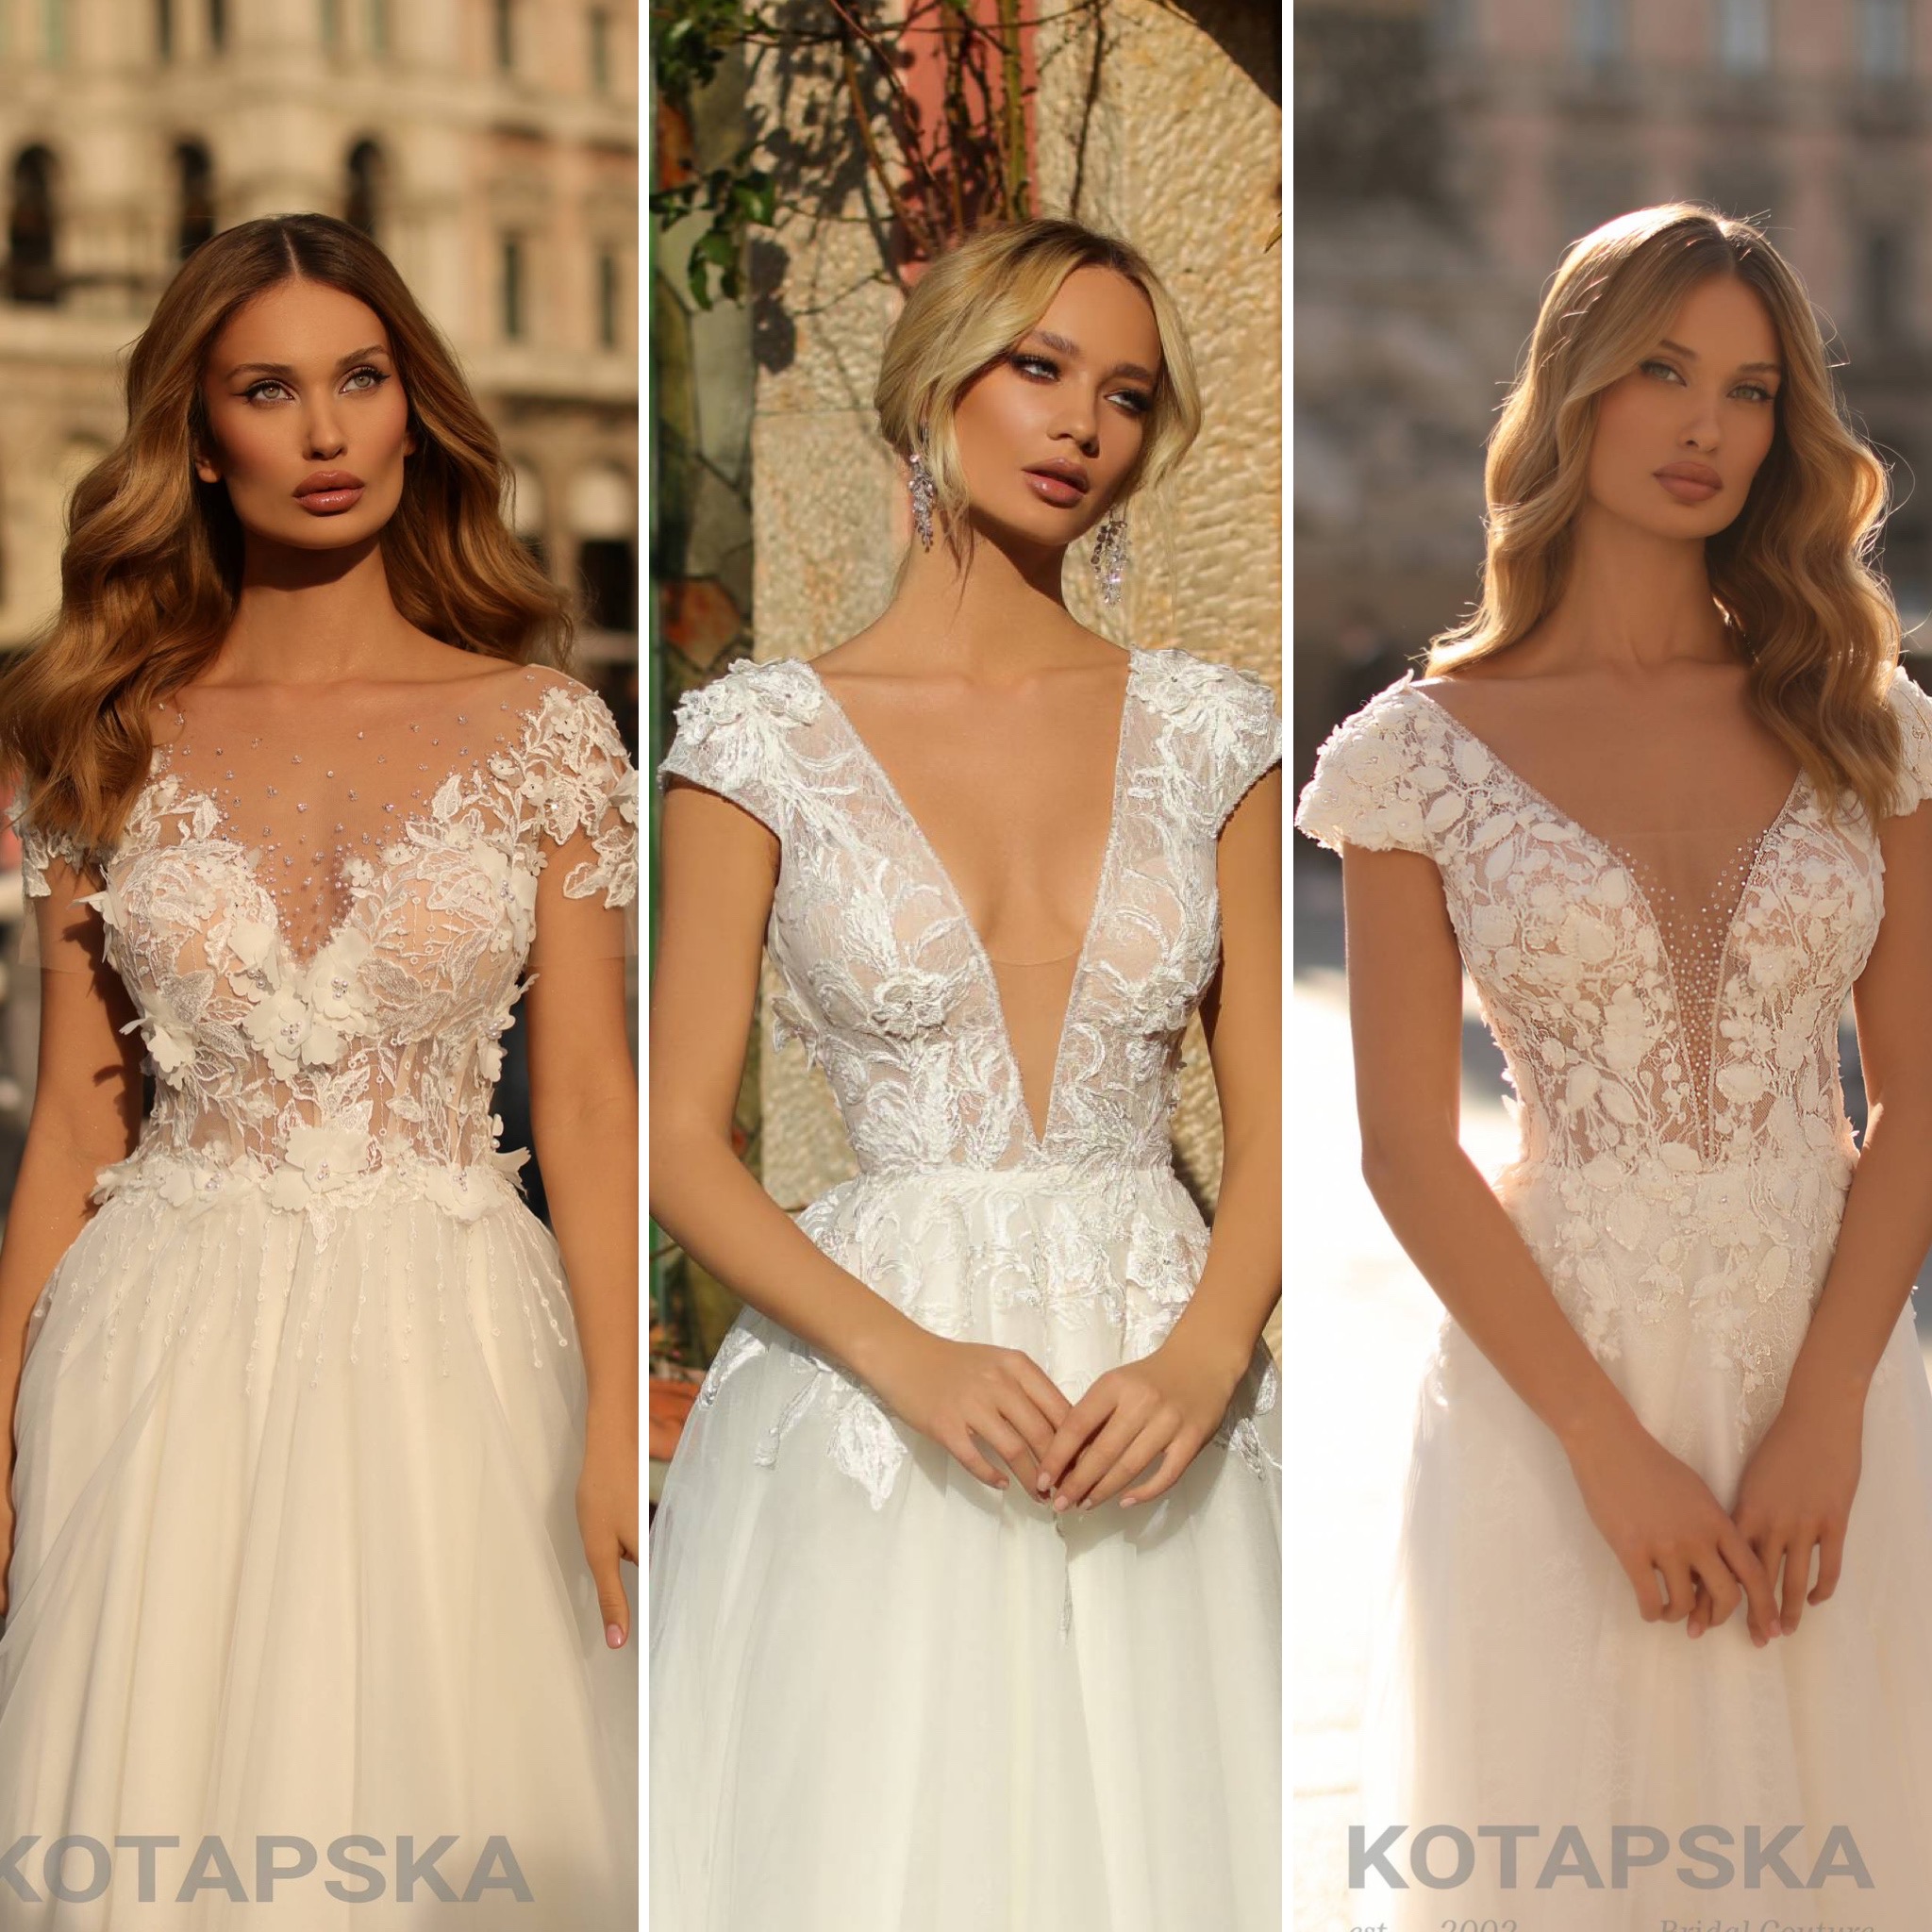 Három Kotapska ruha